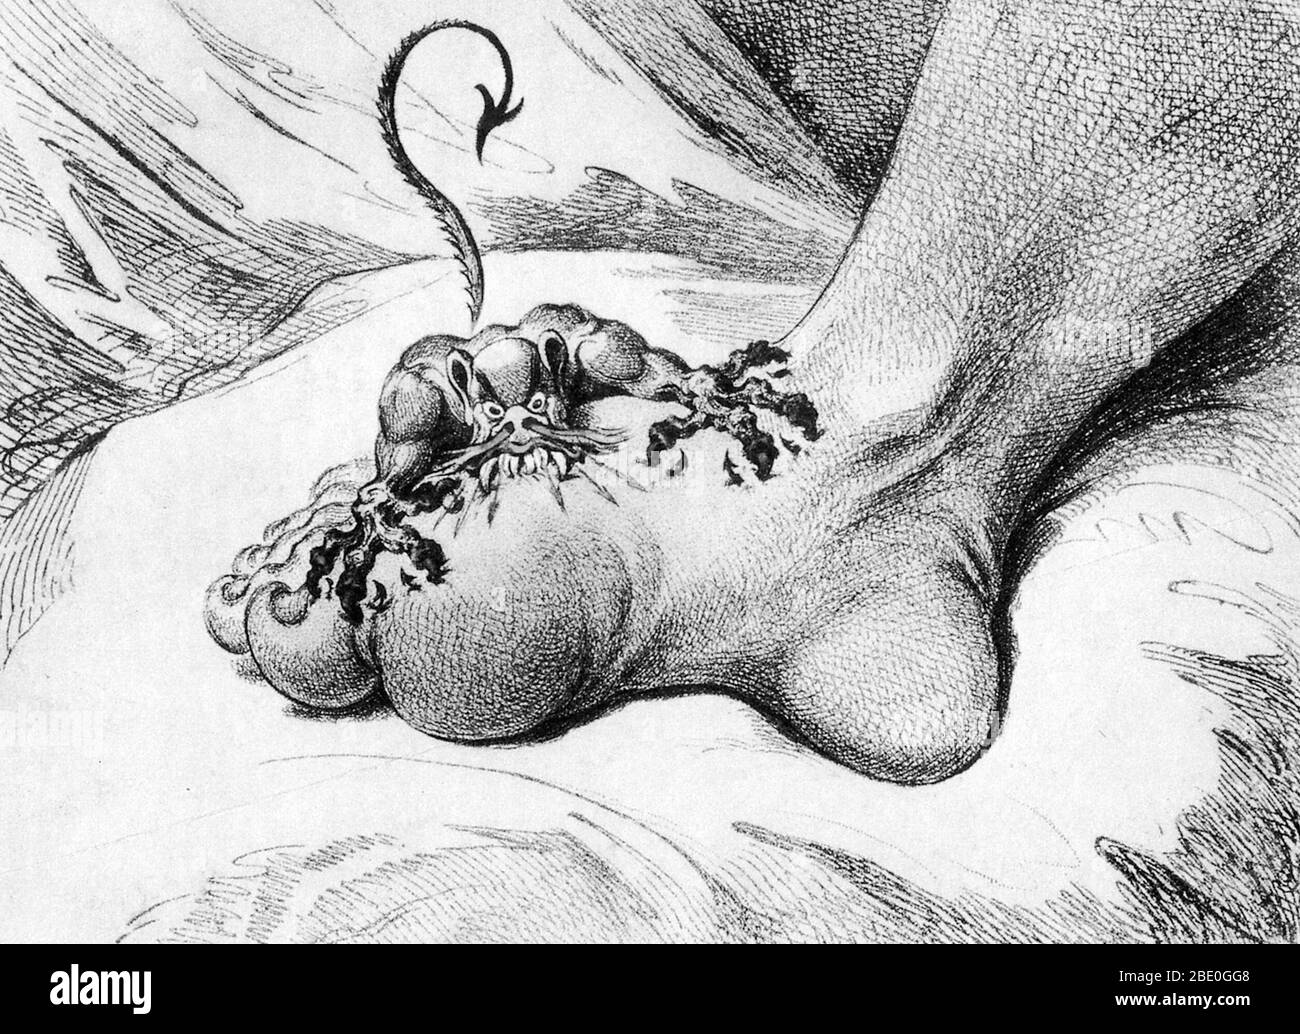 Abbildung, die Schmerzen im Zusammenhang mit der Gicht darstellt. Radierung von James Gillray 1799. Stockfoto